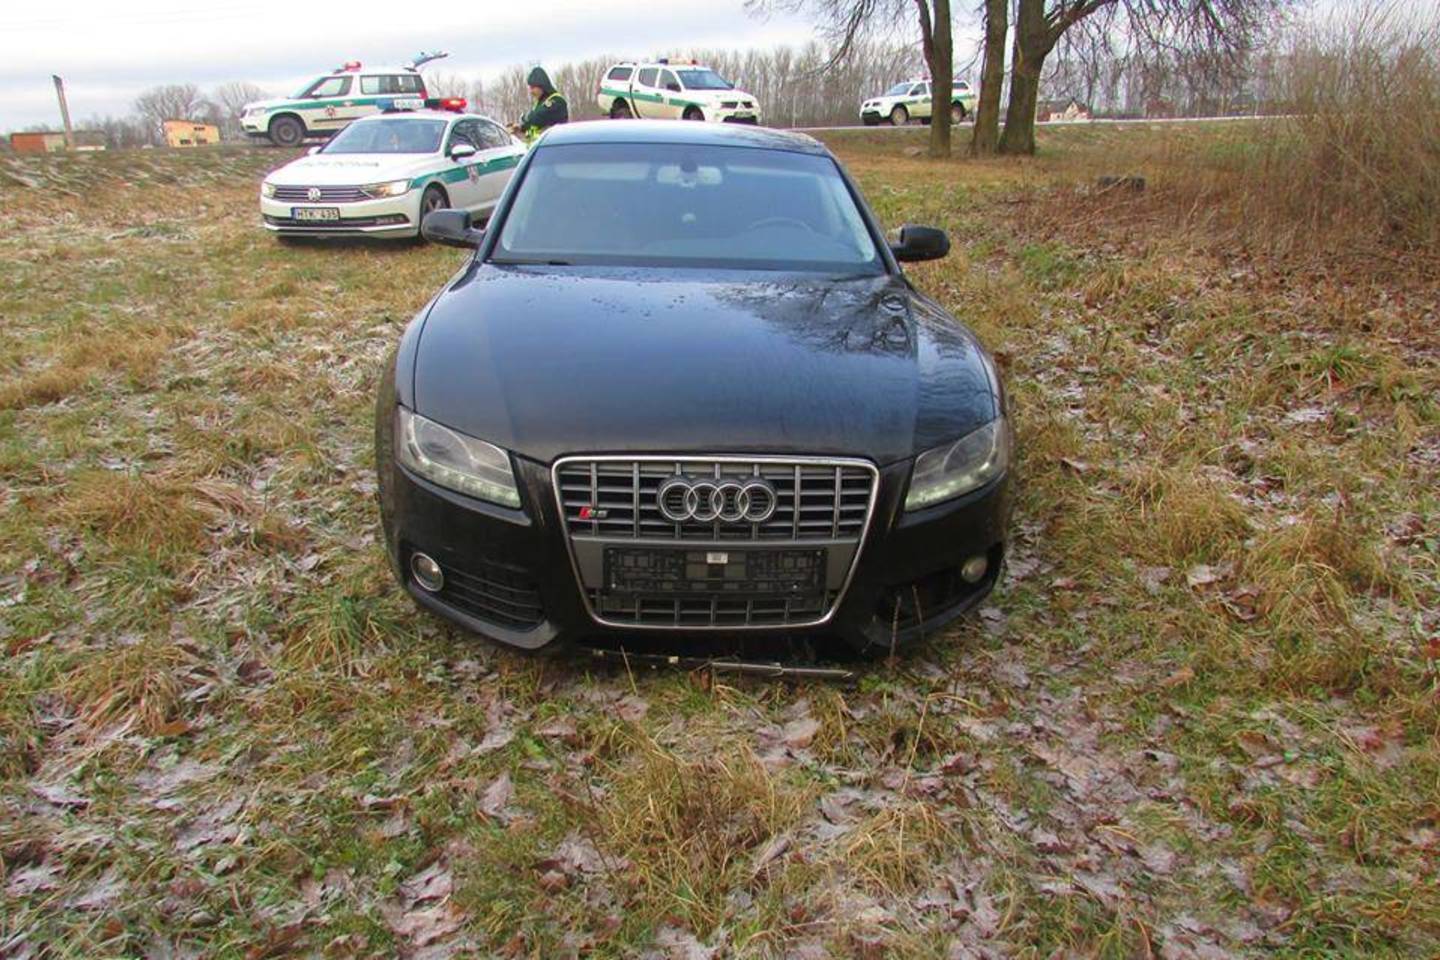  Tarsi trilerio kadruose: po persekiojimo sulaikytas Lenkijoje vogtas „Audi“.<br> Facebook/Marijampolės apskrities VPK nuotr.